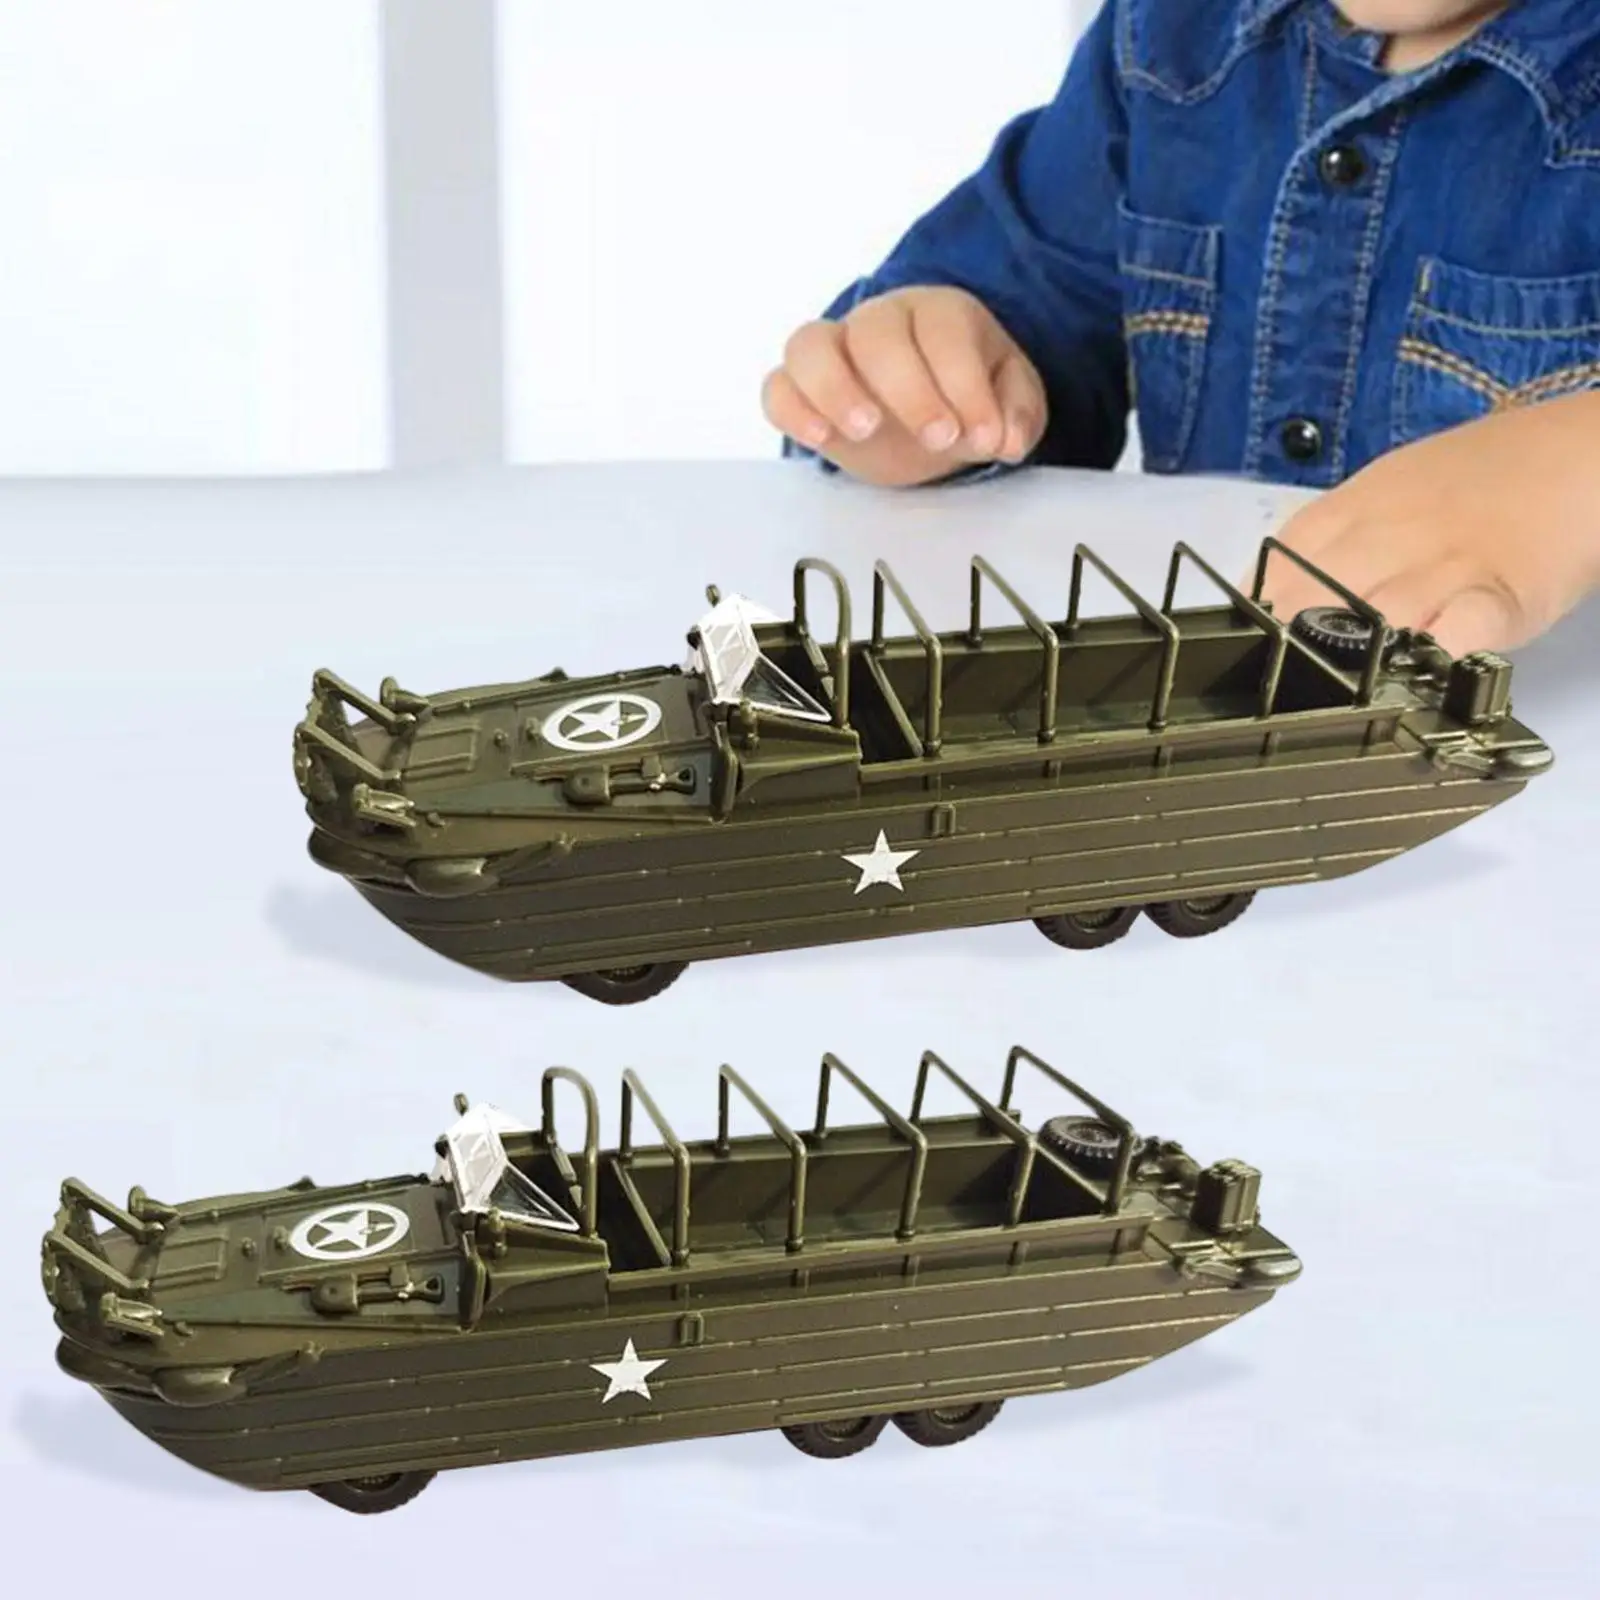 1/72 Scale 4D Assemble Amphibious Vehicle Sand Table Decor for Boys Girls Children